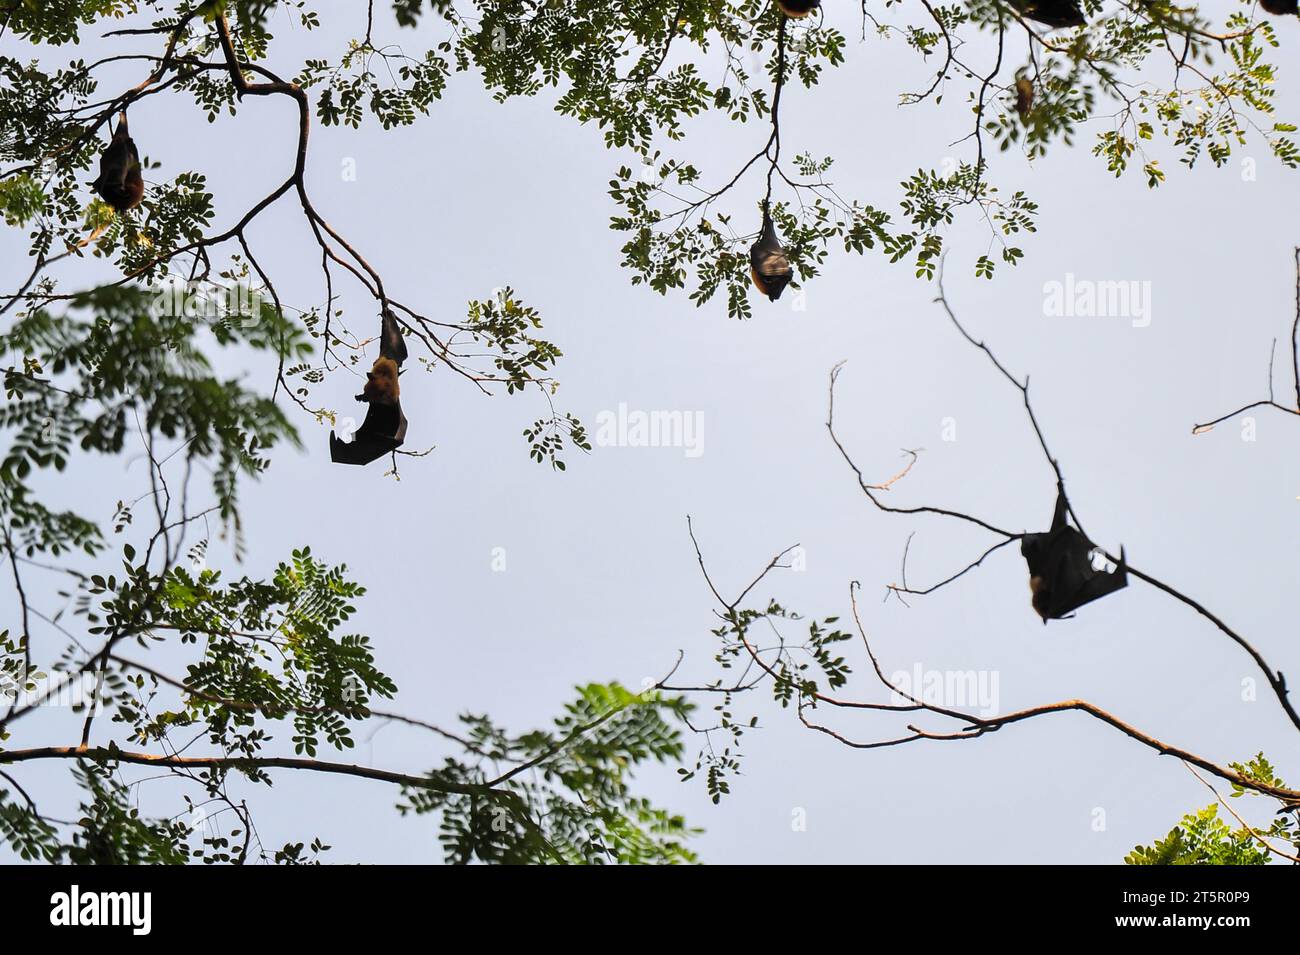 6 novembre 2023 Sylhet-Bangladesh: Pipistrelli appesi al ramo d'albero alla luce del giorno a Sylhet, in Bangladesh. I pipistrelli sono accusati di infezione da virus Nipah è una nuova malattia zoonotica emergente che si diffonde da animale a umano. I pipistrelli della frutta sono uno dei portatori del virus Nipah che viene trasmesso dai pipistrelli ad altri animali principalmente attraverso i fluidi corporei. Nel 2018 l'epidemia di Nipah nello stato indiano del Kerala ha causato 17 vittime. Ha infatti aperto il vaso di Pandora esponendo il ruolo del pubblico in generale, del dipartimento della sanità, dei social media e così via. Il rilevamento precoce e i m ben oliati Foto Stock